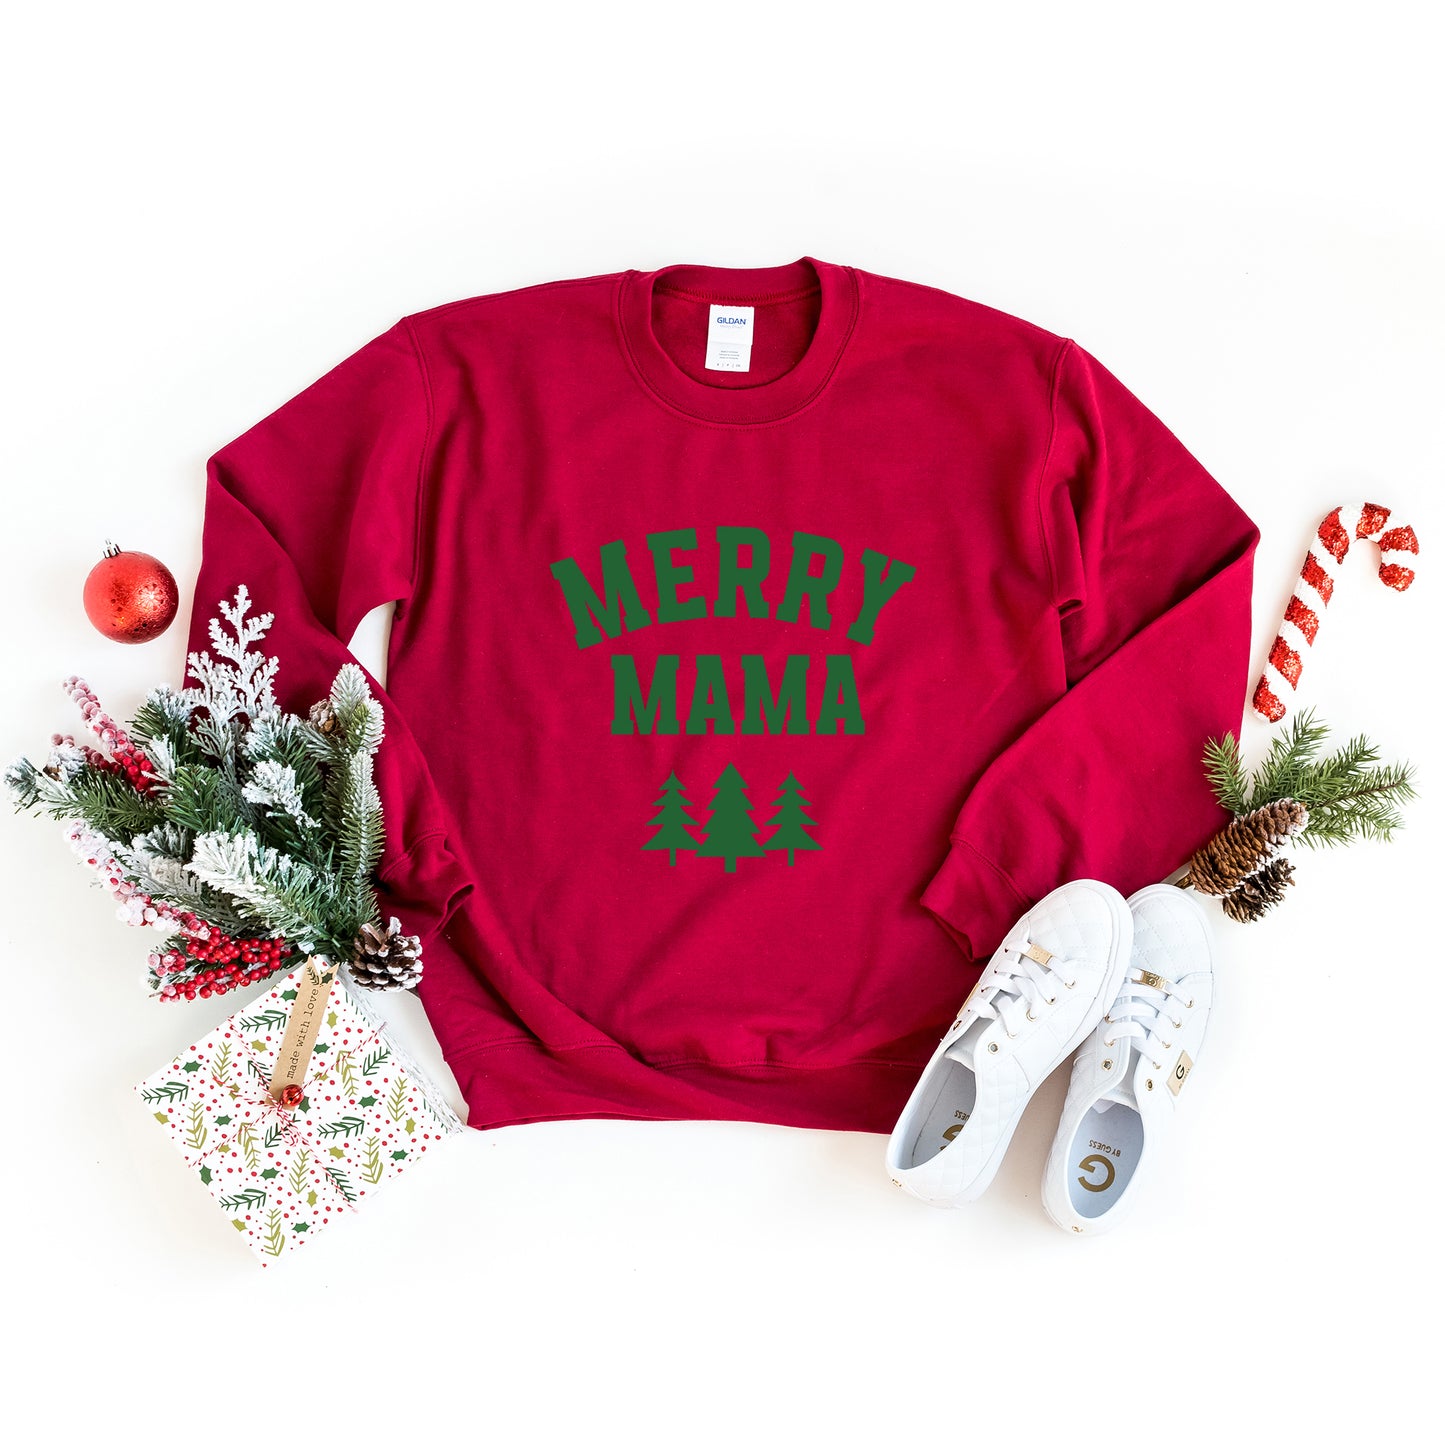 Merry Mama Pine Tree | Sweatshirt